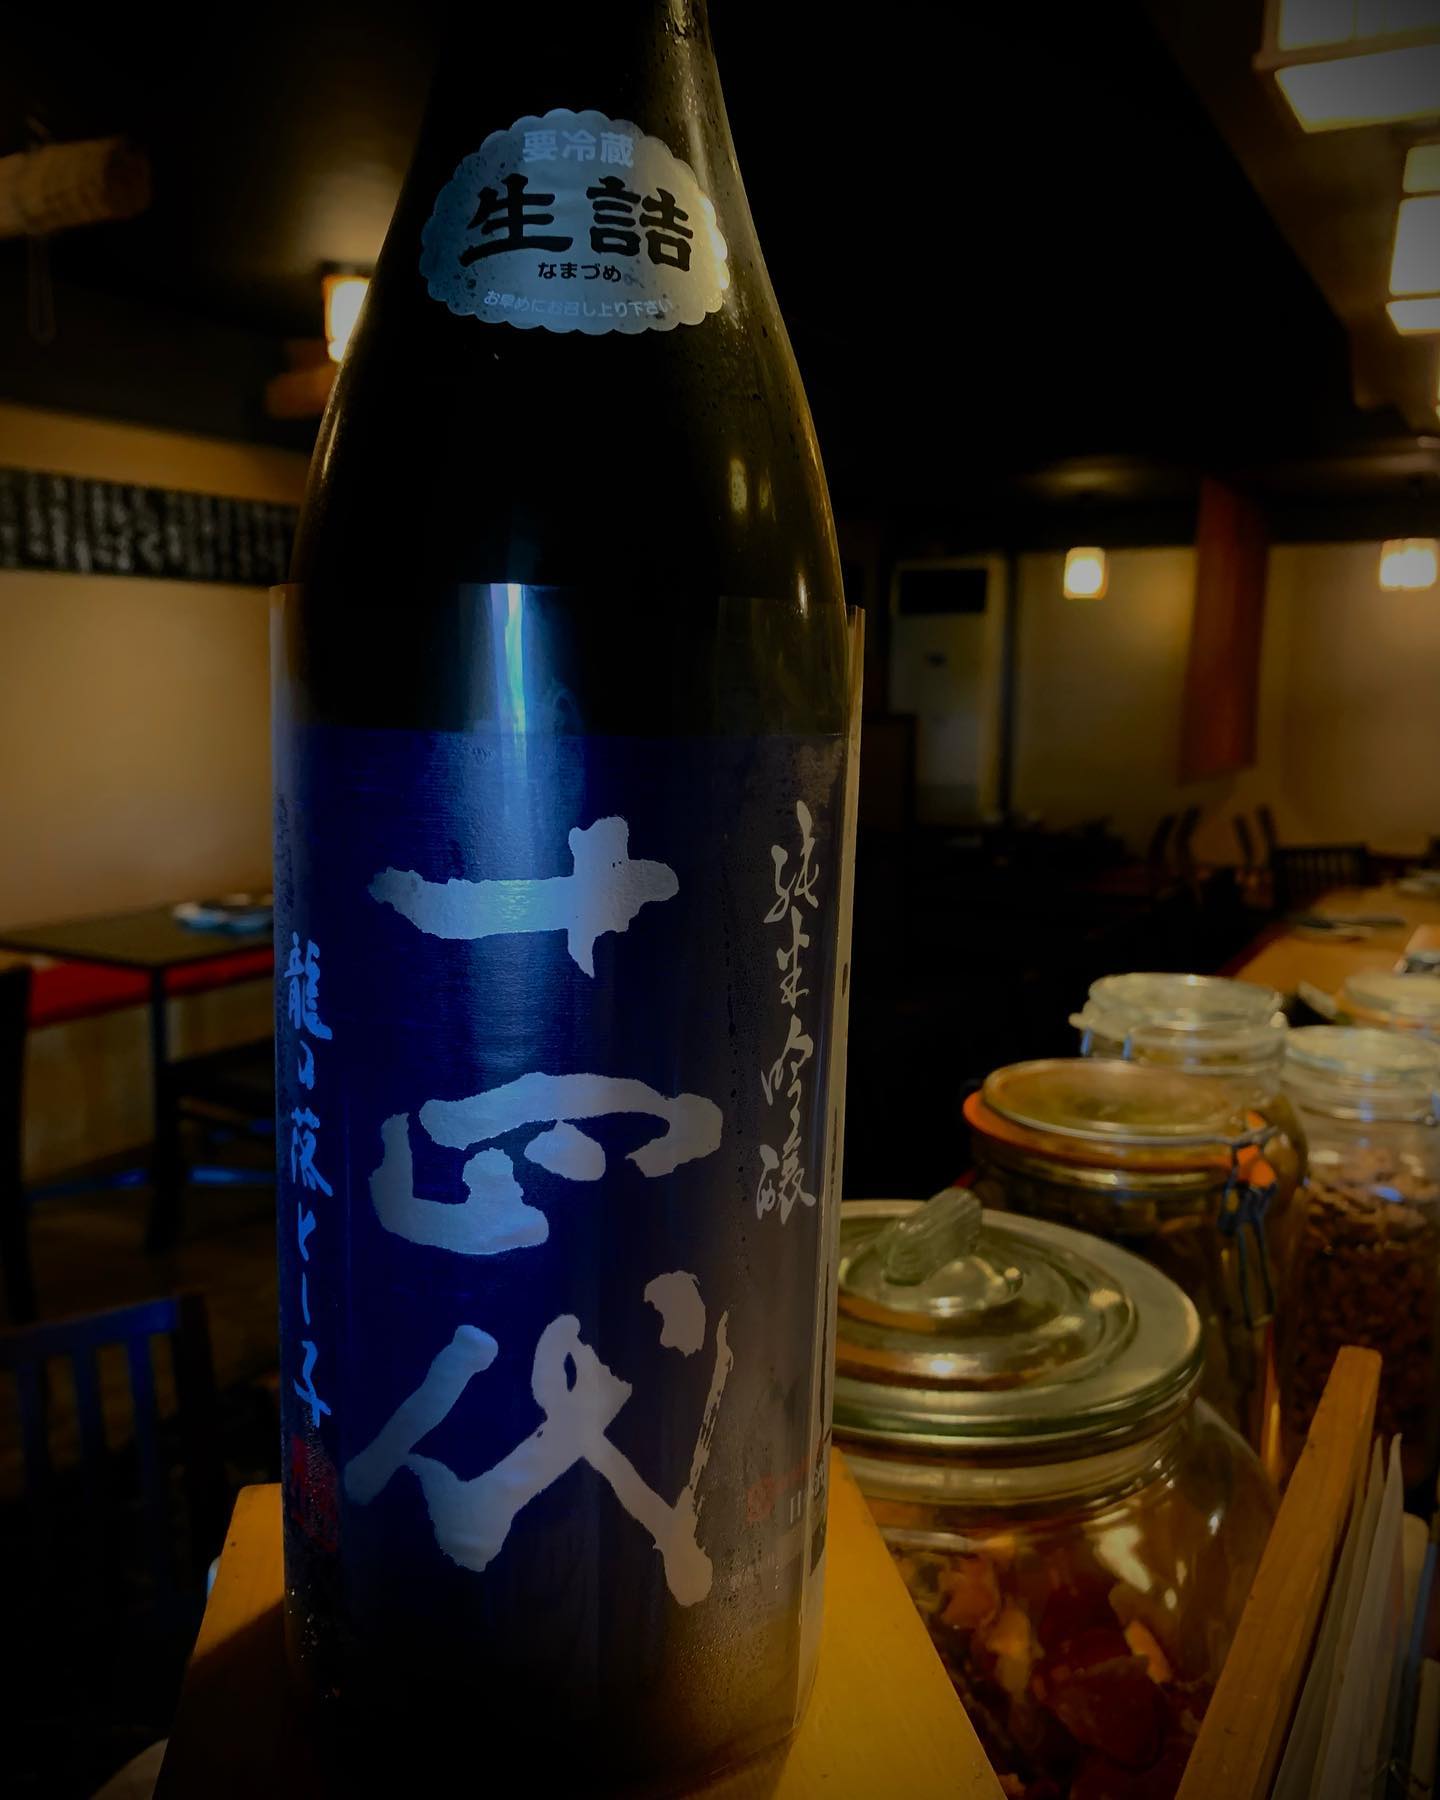 本日の日本酒紹介
｢十四代｣
今回の十四代は龍の落とし子というお米を使い作ったお酒

爽やかな甘い香りが漂い、口に含むとキレイな甘みが広がります。
深い旨みとしっかりとしたキレ、さすが十四代です。
 #